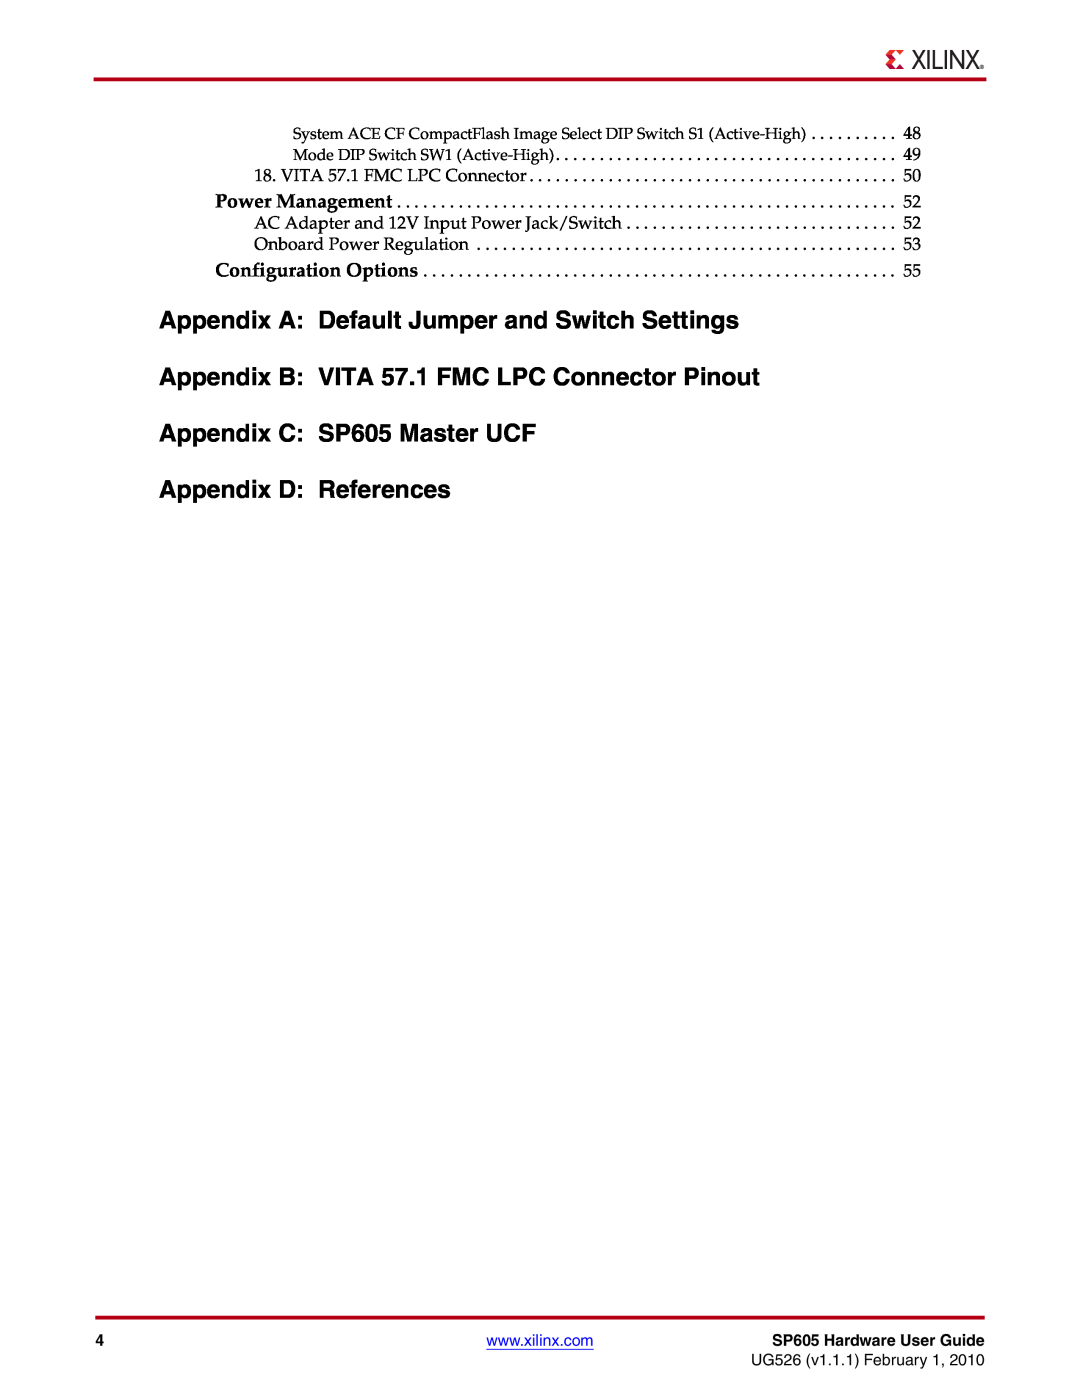 Xilinx SP605 manual Appendix A Default Jumper and Switch Settings, Appendix B VITA 57.1 FMC LPC Connector Pinout 